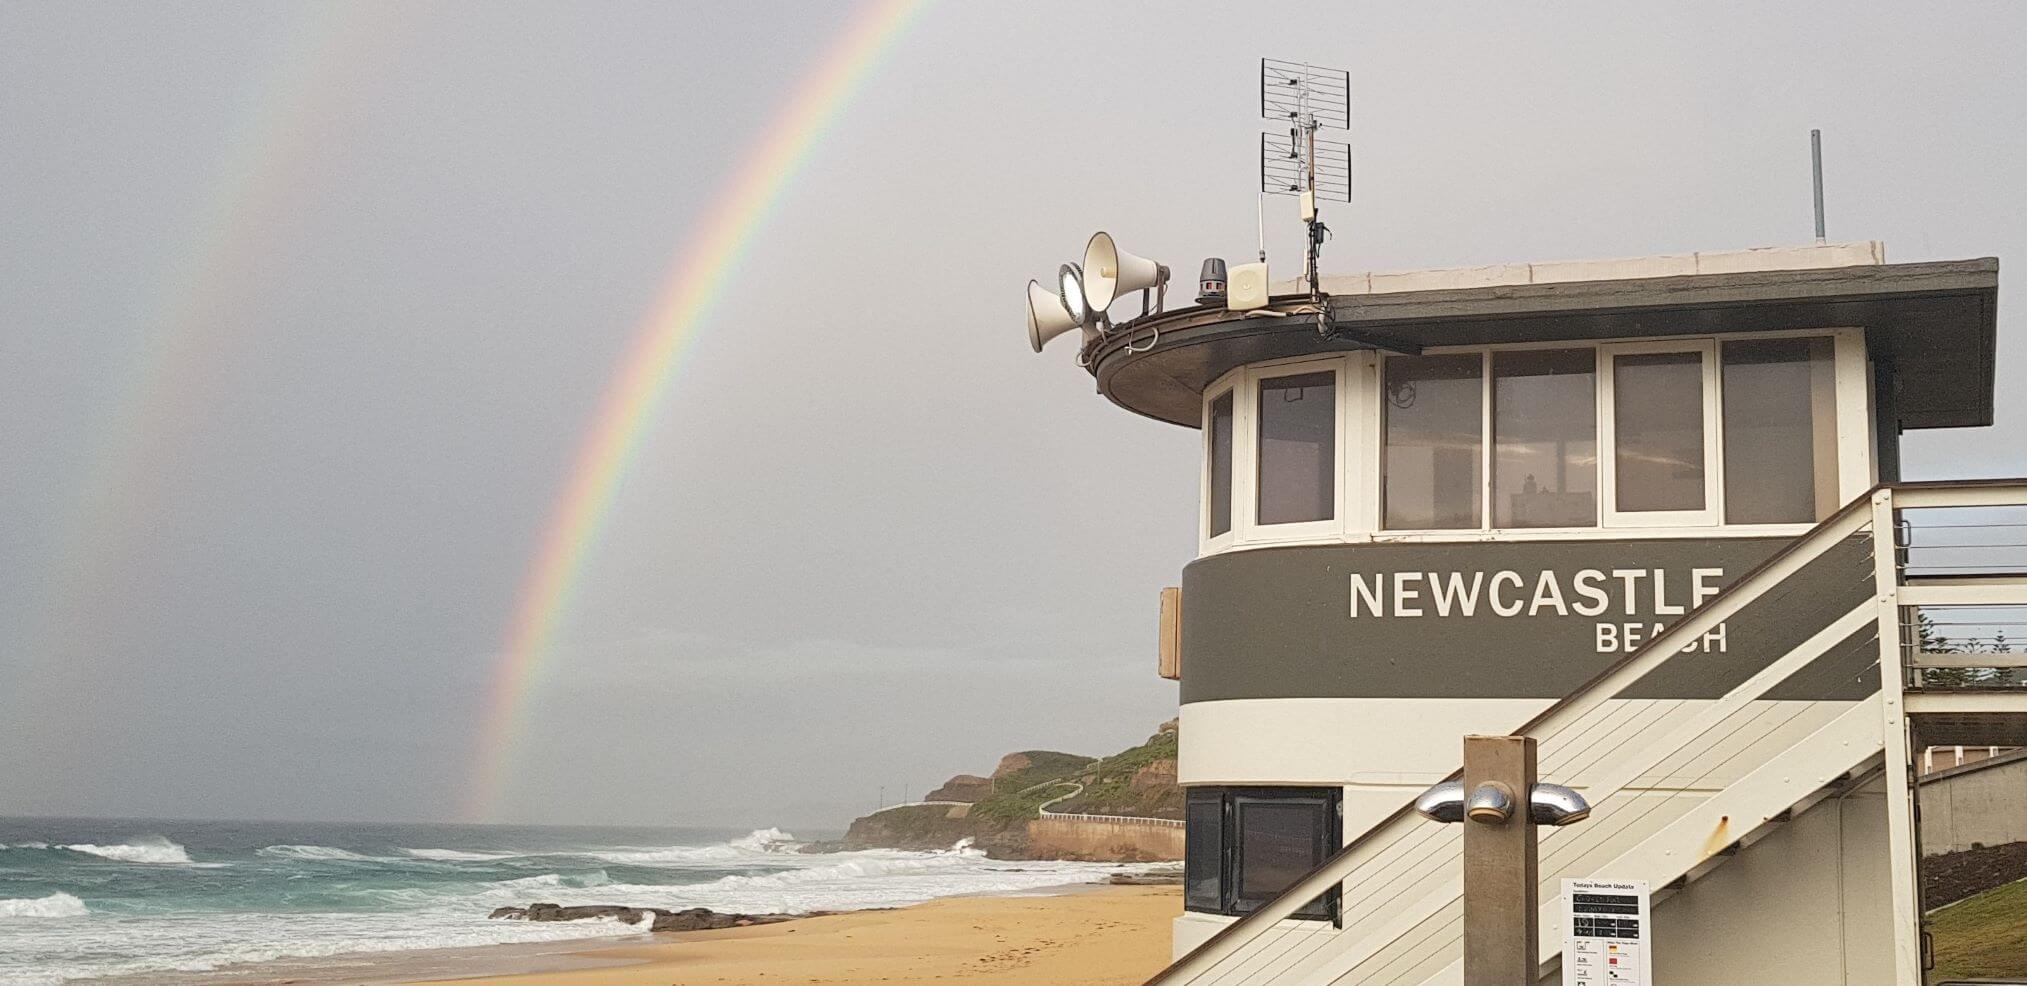 180430-newy-beach-rainbow-2.jpg